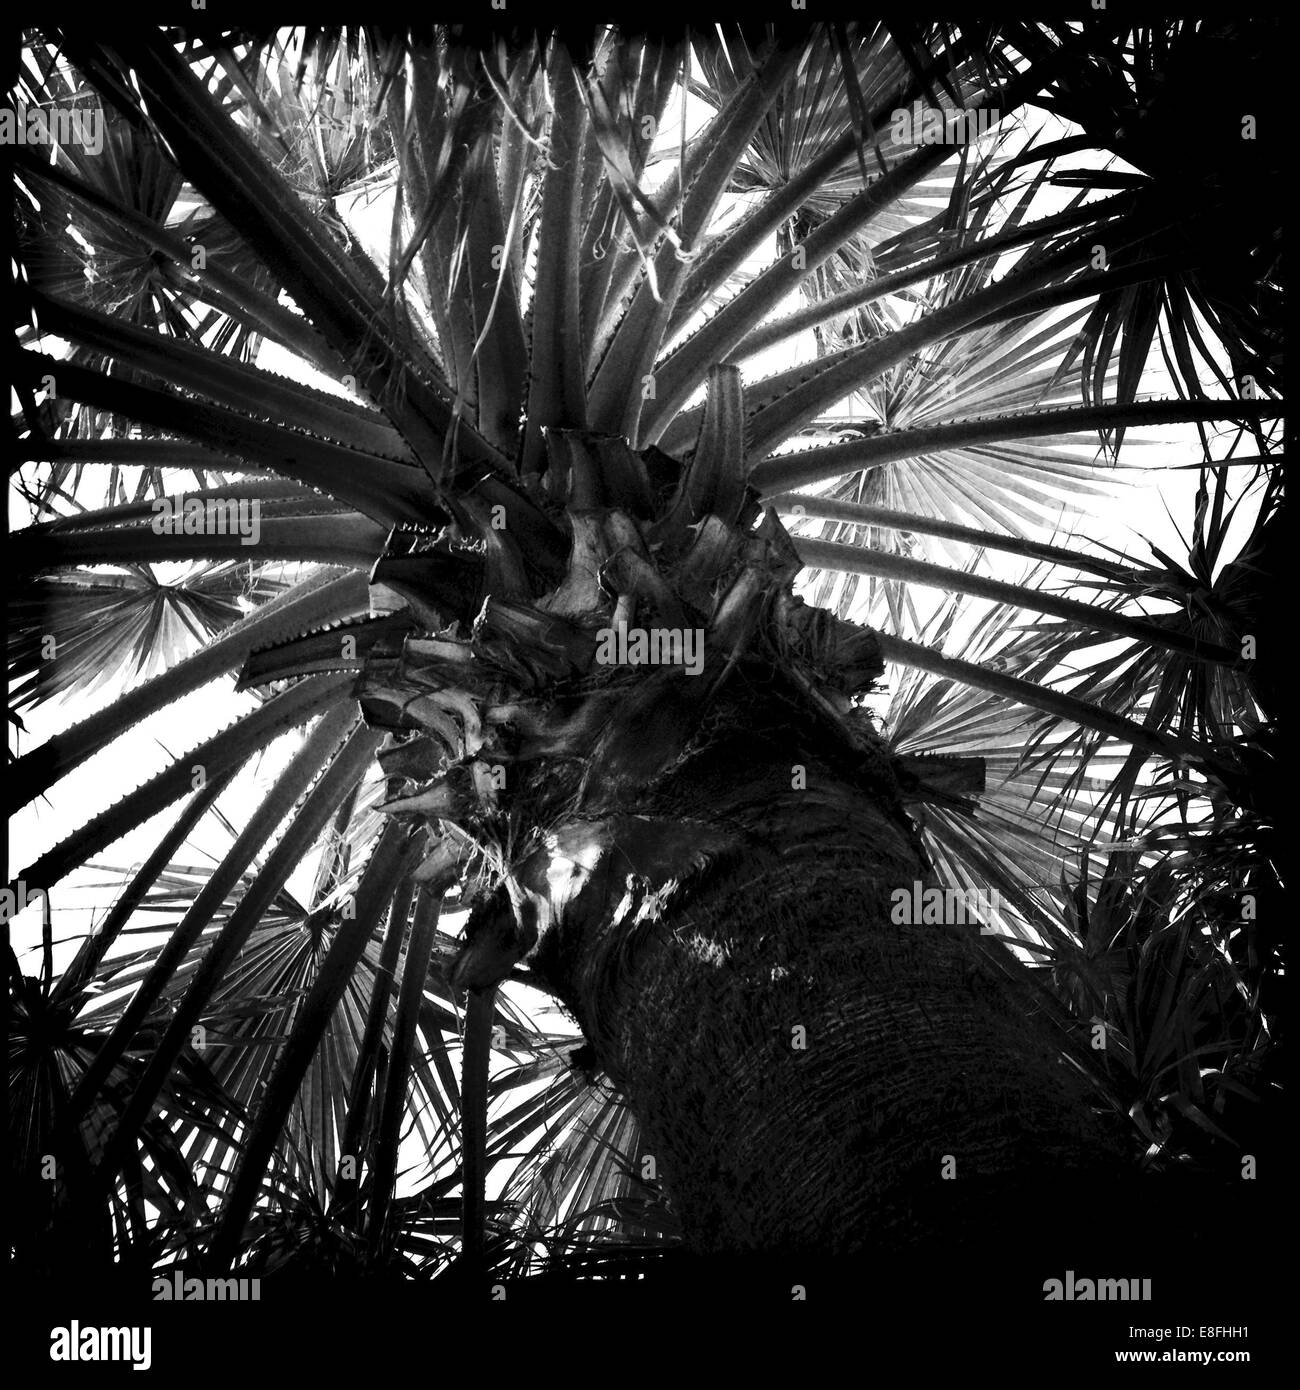 United Arab Emirates, Abu Dhabi, Palm trees Stock Photo